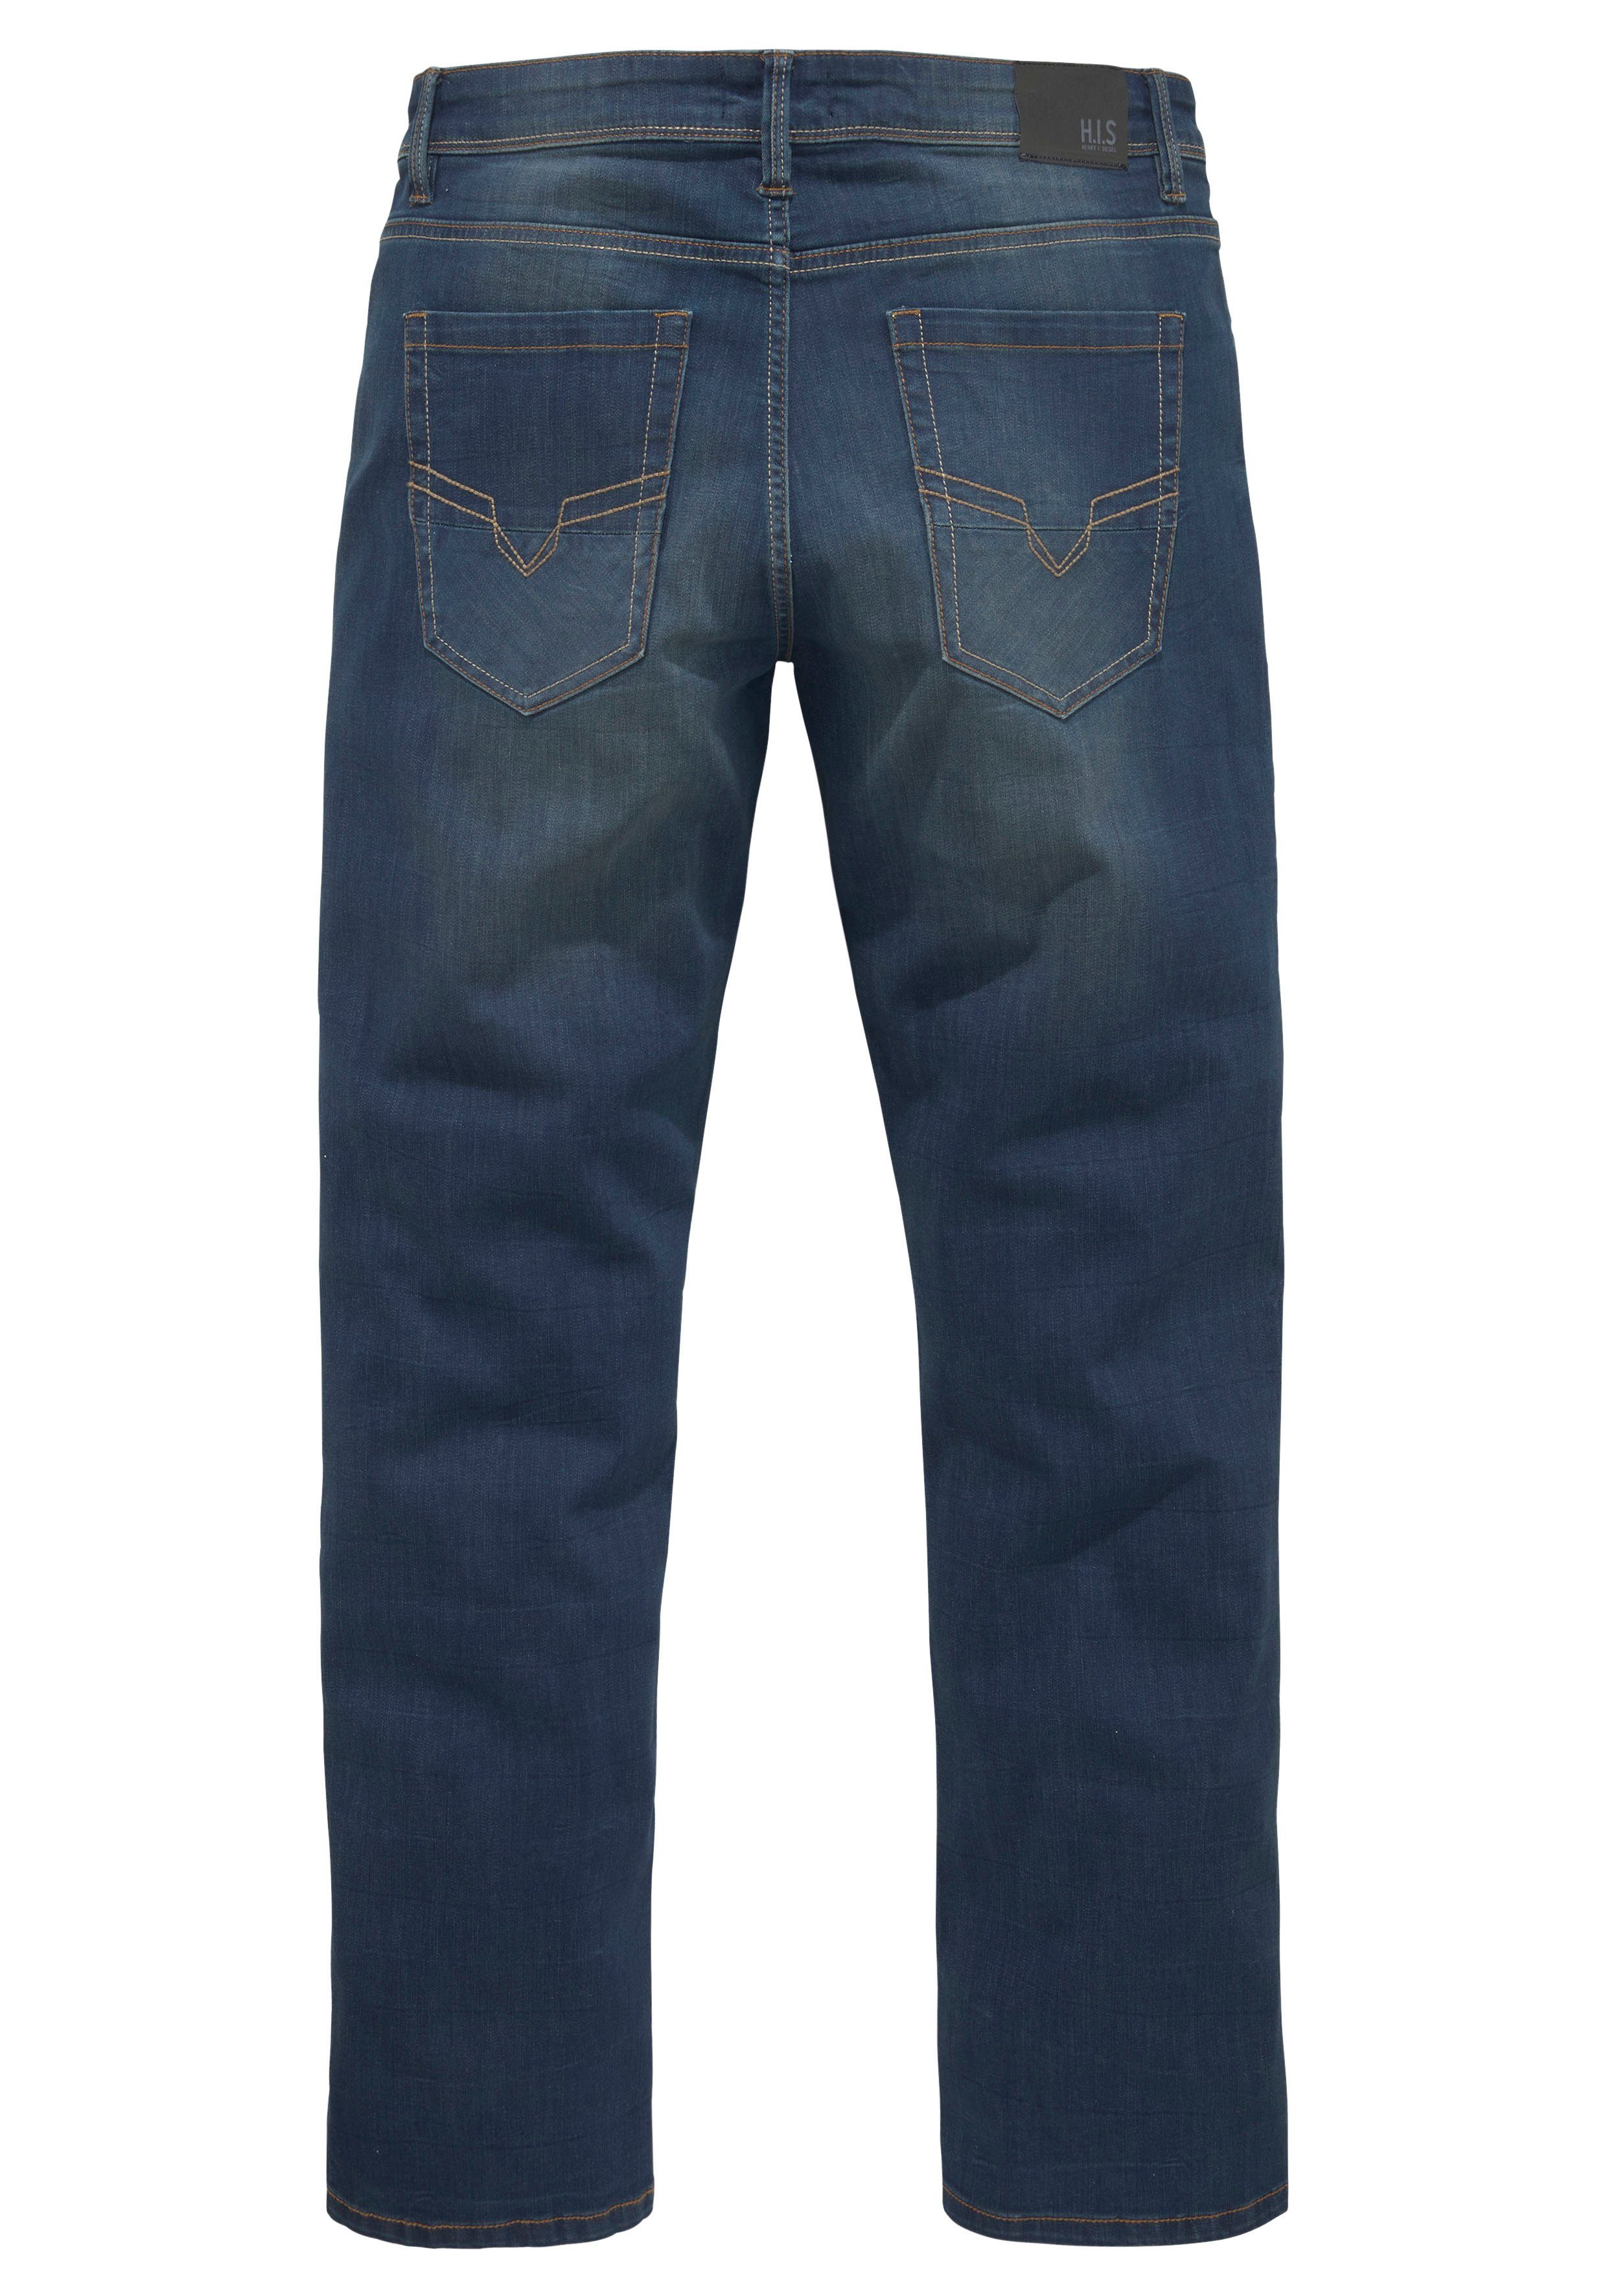 Wash H.I.S wassersparende durch Produktion Ozon Ökologische, ANTIN Comfort-fit-Jeans dark-blue-used